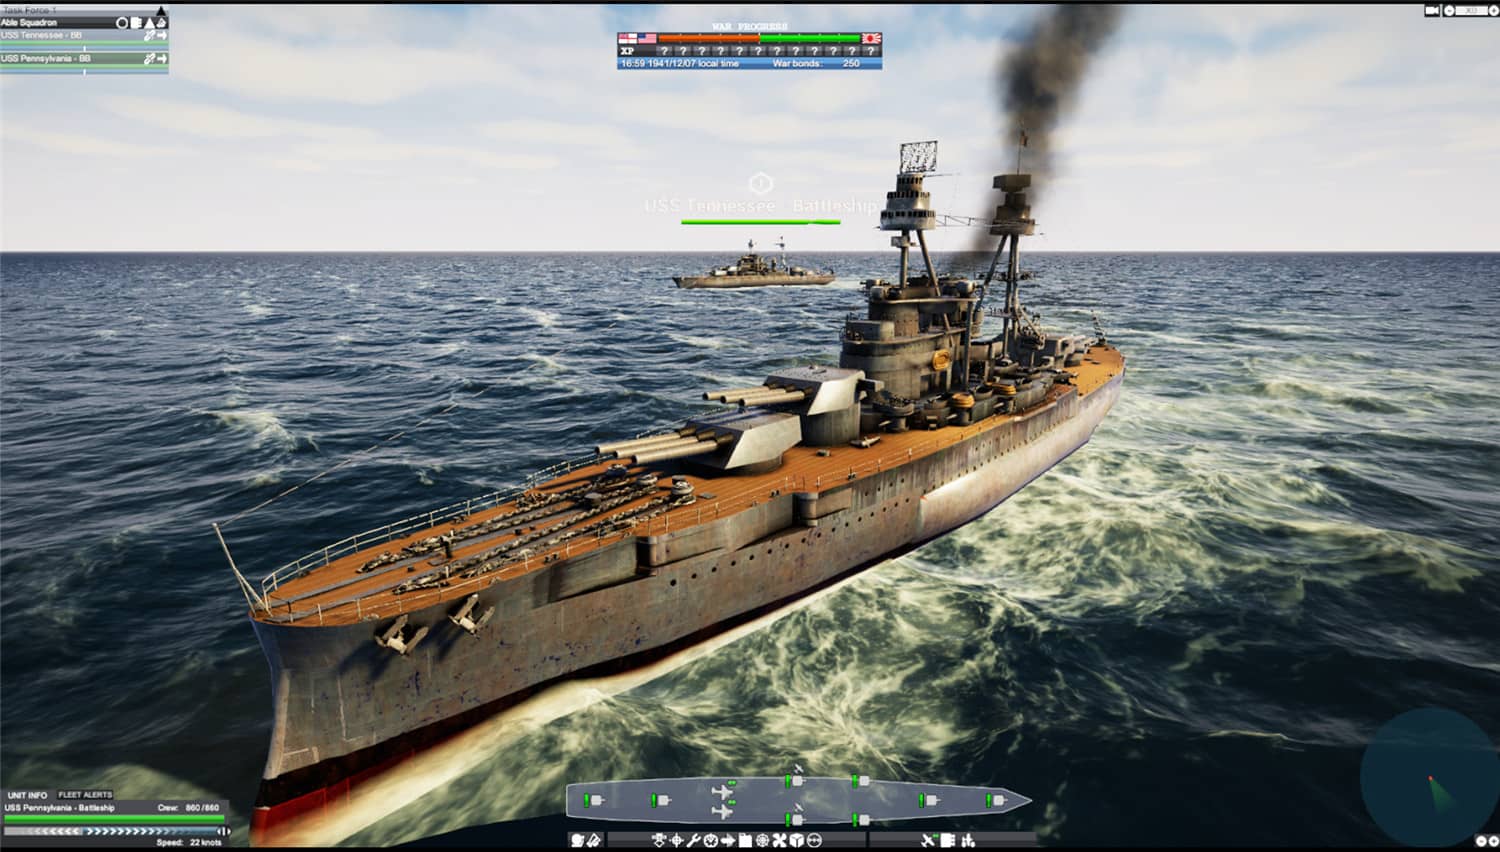 太平洋雄风/Victory At Sea Pacific